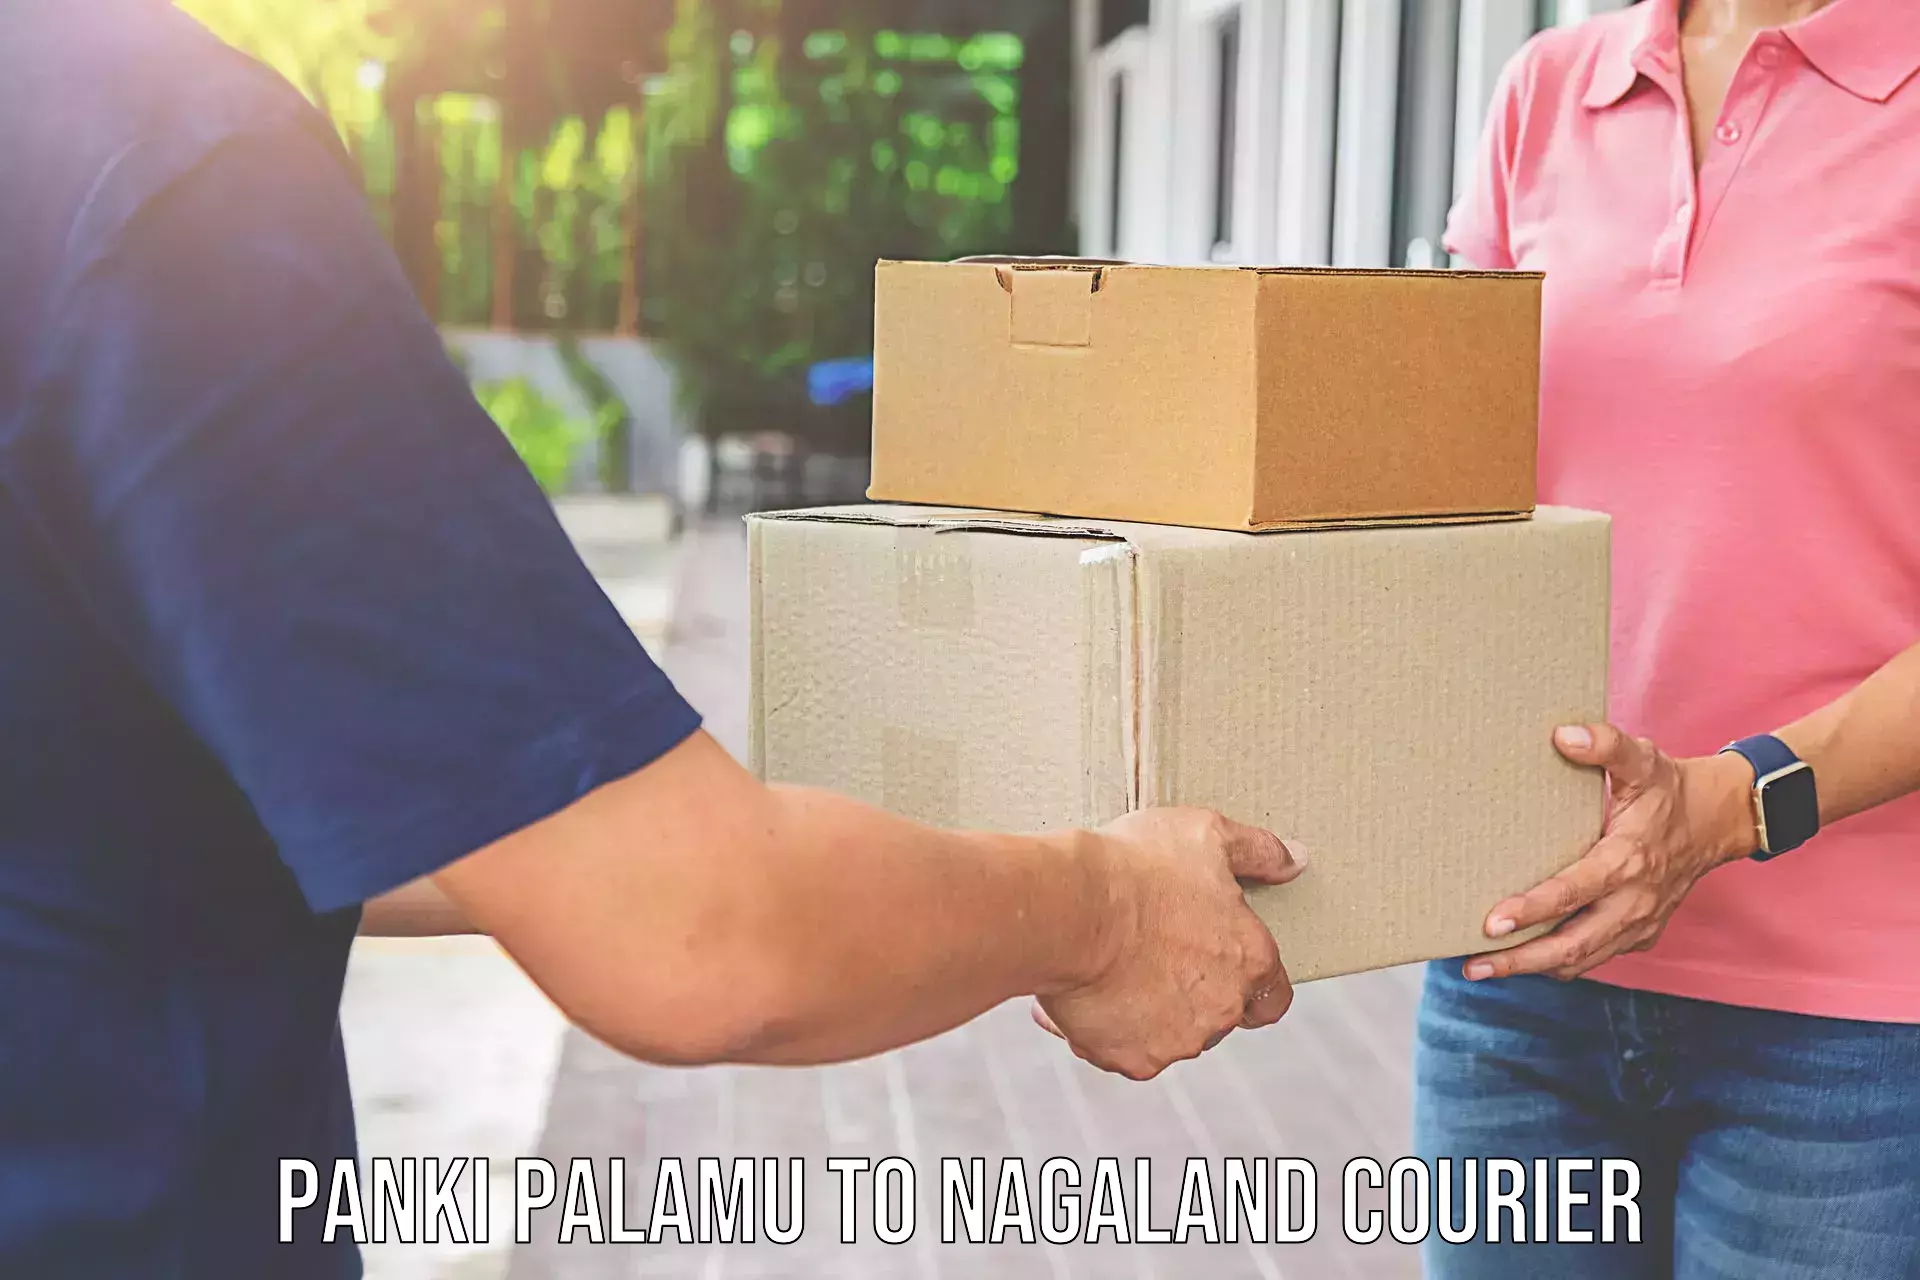 Moving and packing experts Panki Palamu to Nagaland